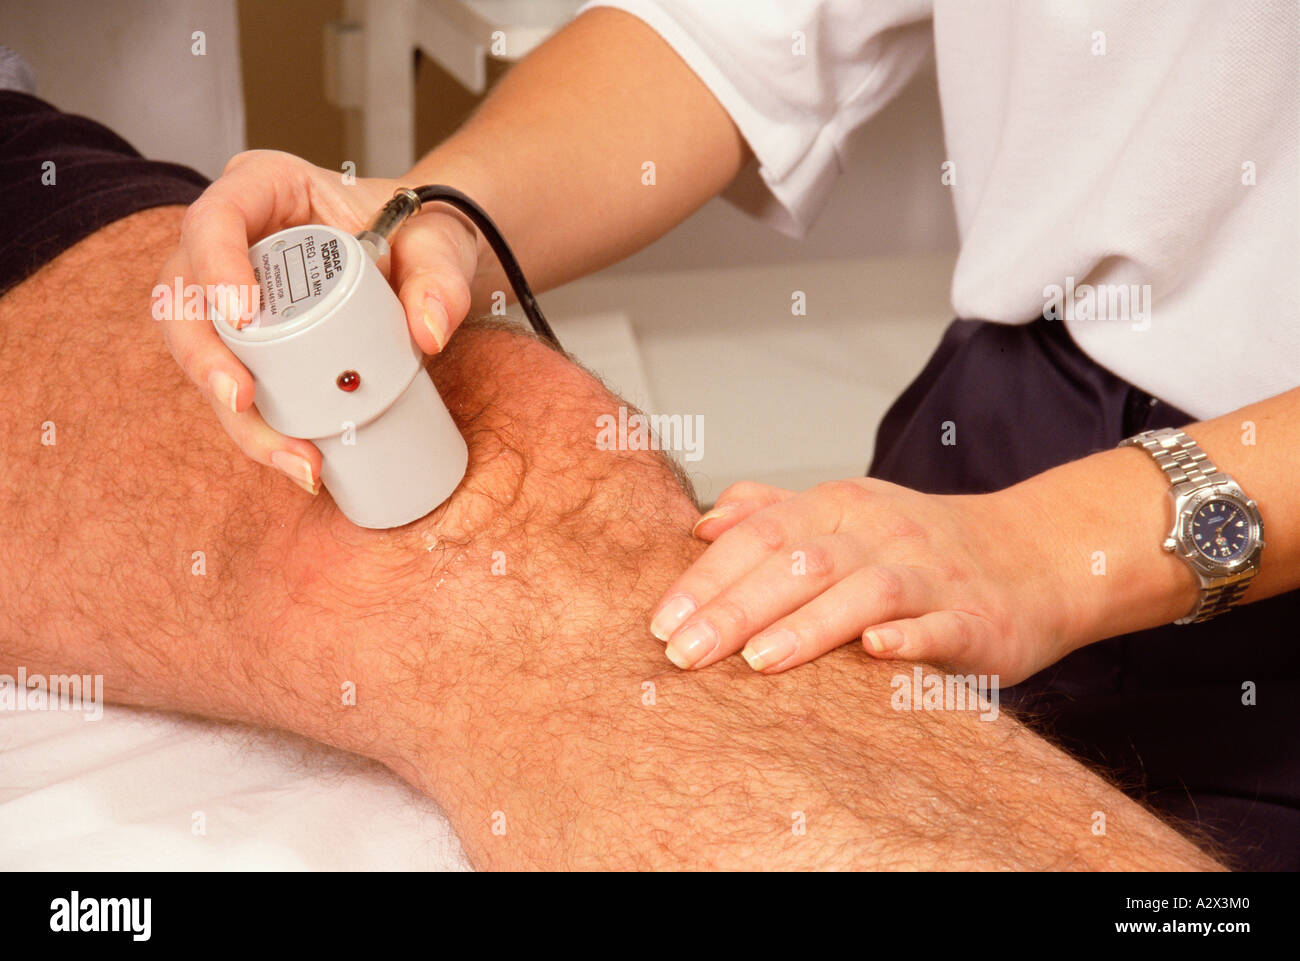 Ospedale Reparto di fisioterapia. Close-up mani del fisioterapista utilizzando apparecchiature a ultrasuoni per trattare il paziente di sesso maschile del ginocchio. Foto Stock